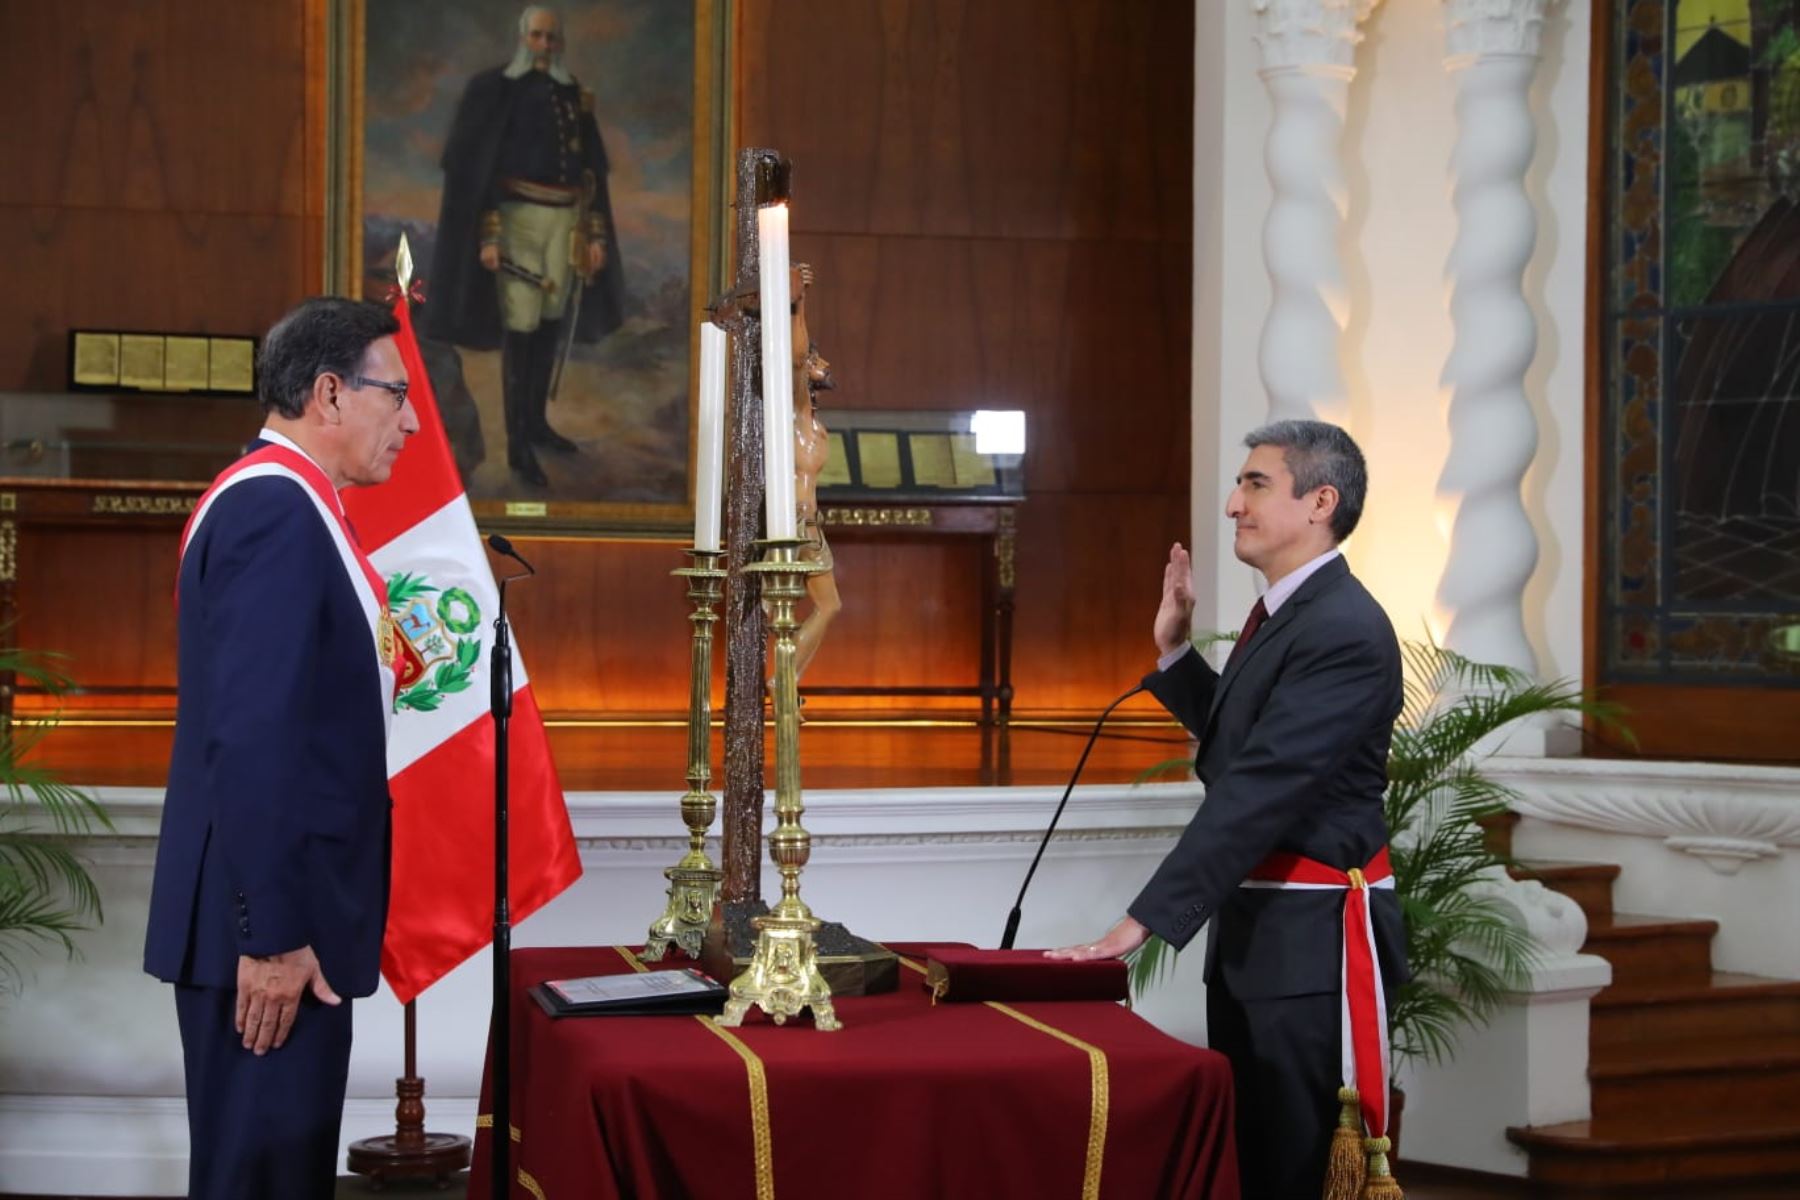 El presidente de la República, Martín Vizcarra, tomó hoy juramento a Alejandro Neyra como nuevo ministro de Cultura, en ceremonia realizada en Palacio de Gobierno. Foto: ANDINA/ Prensa Presidencia